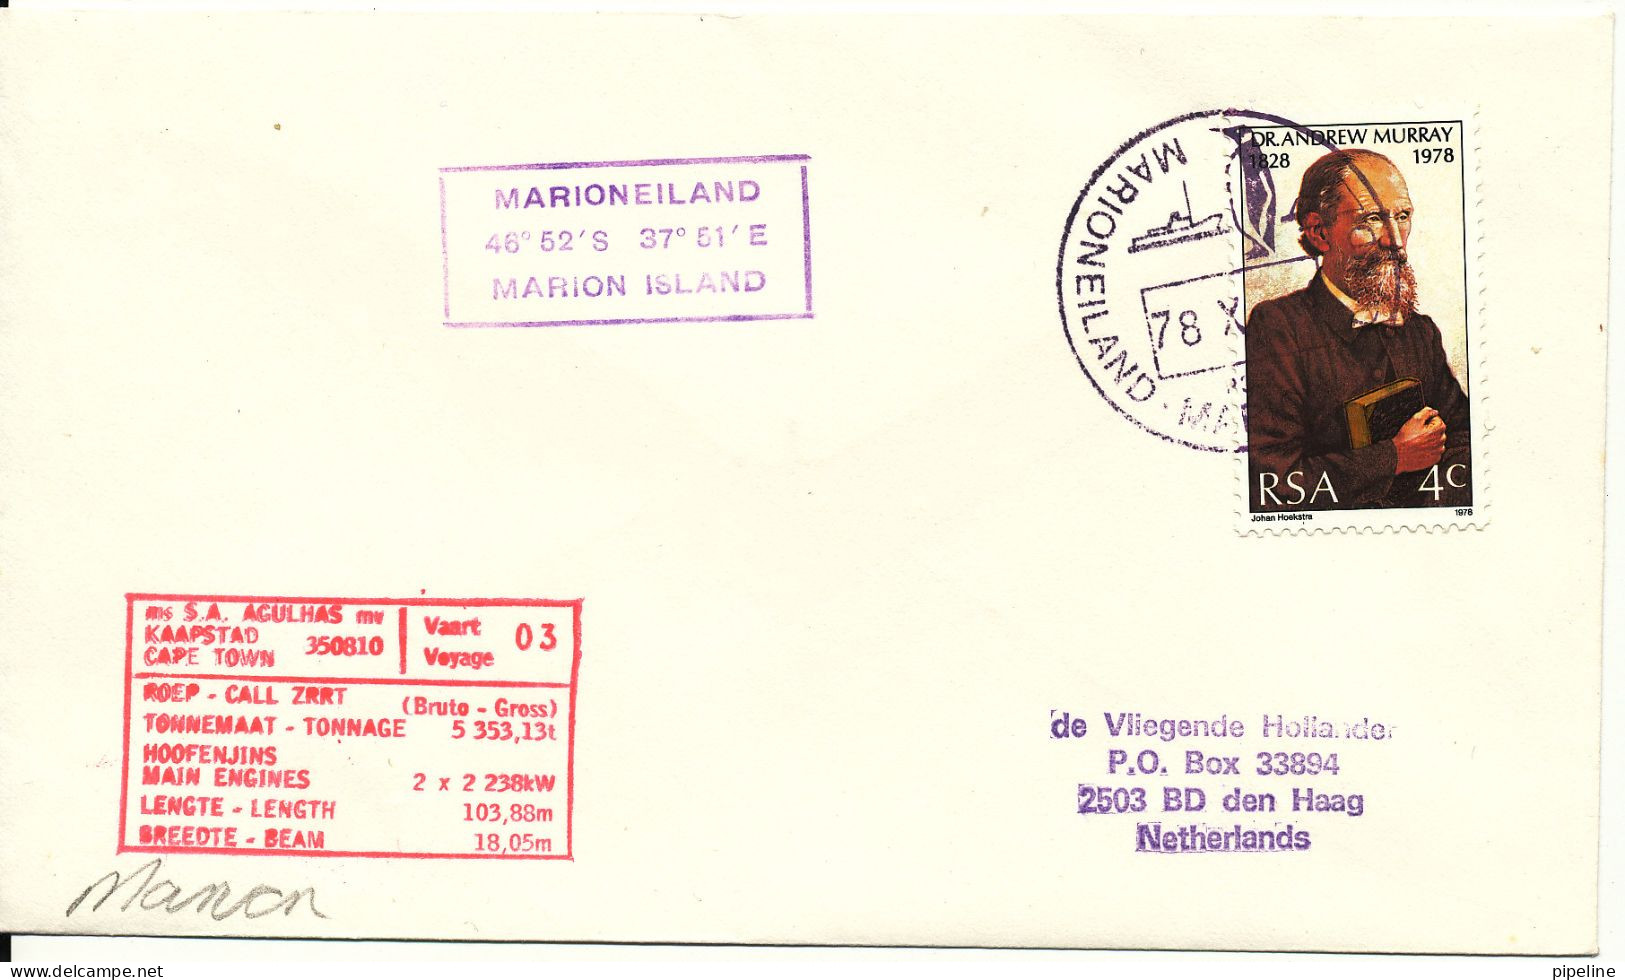 South Africa RSA Ship Cover M. S. S.A. Agulhas Marioneiland Marion Island 4-10-1978 ?? - Briefe U. Dokumente